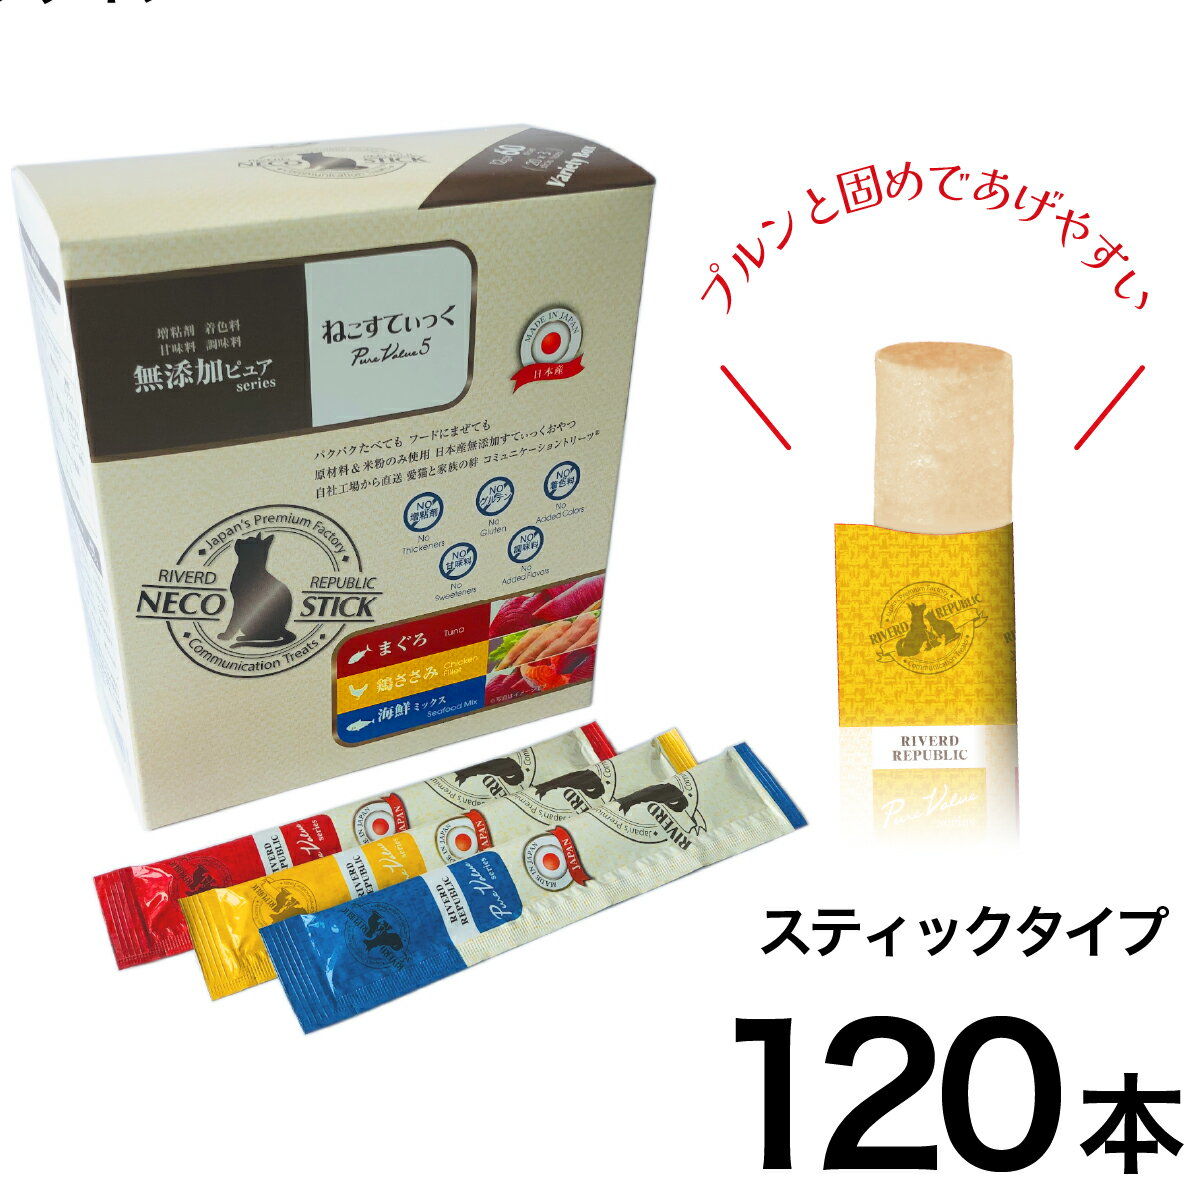 ねこすてぃっく 日本産 猫用おやつ 無添加ピュア PureValue5 バラエティボックス 120本入 (20本×3種×2箱)